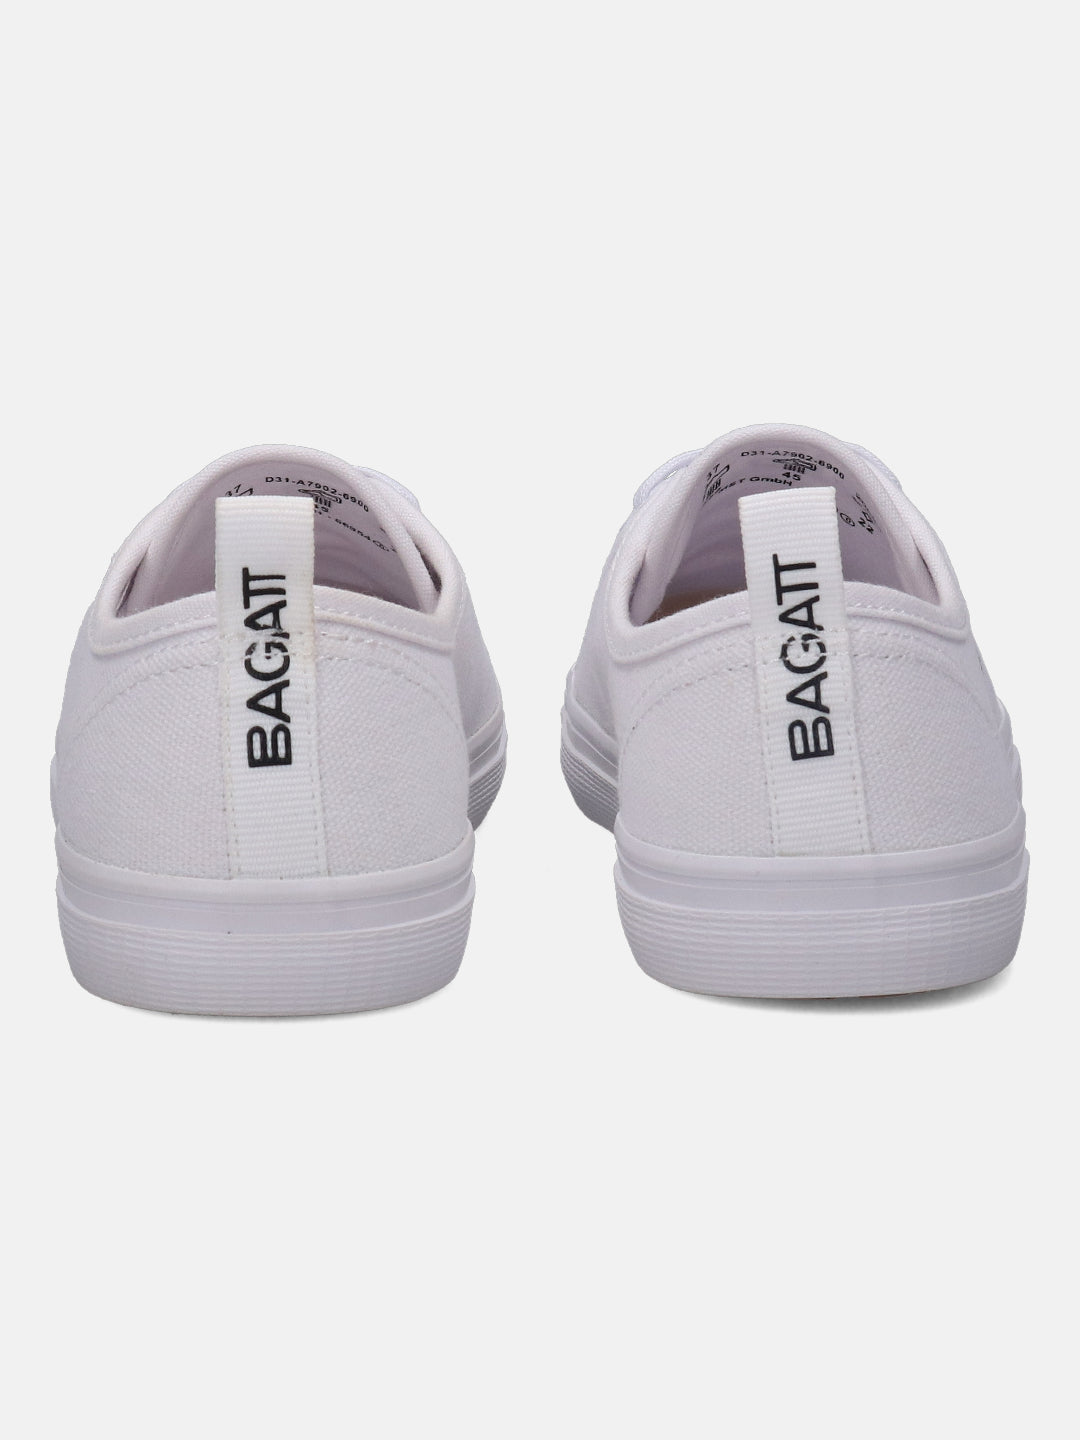 Level White Sneakers - BAGATT